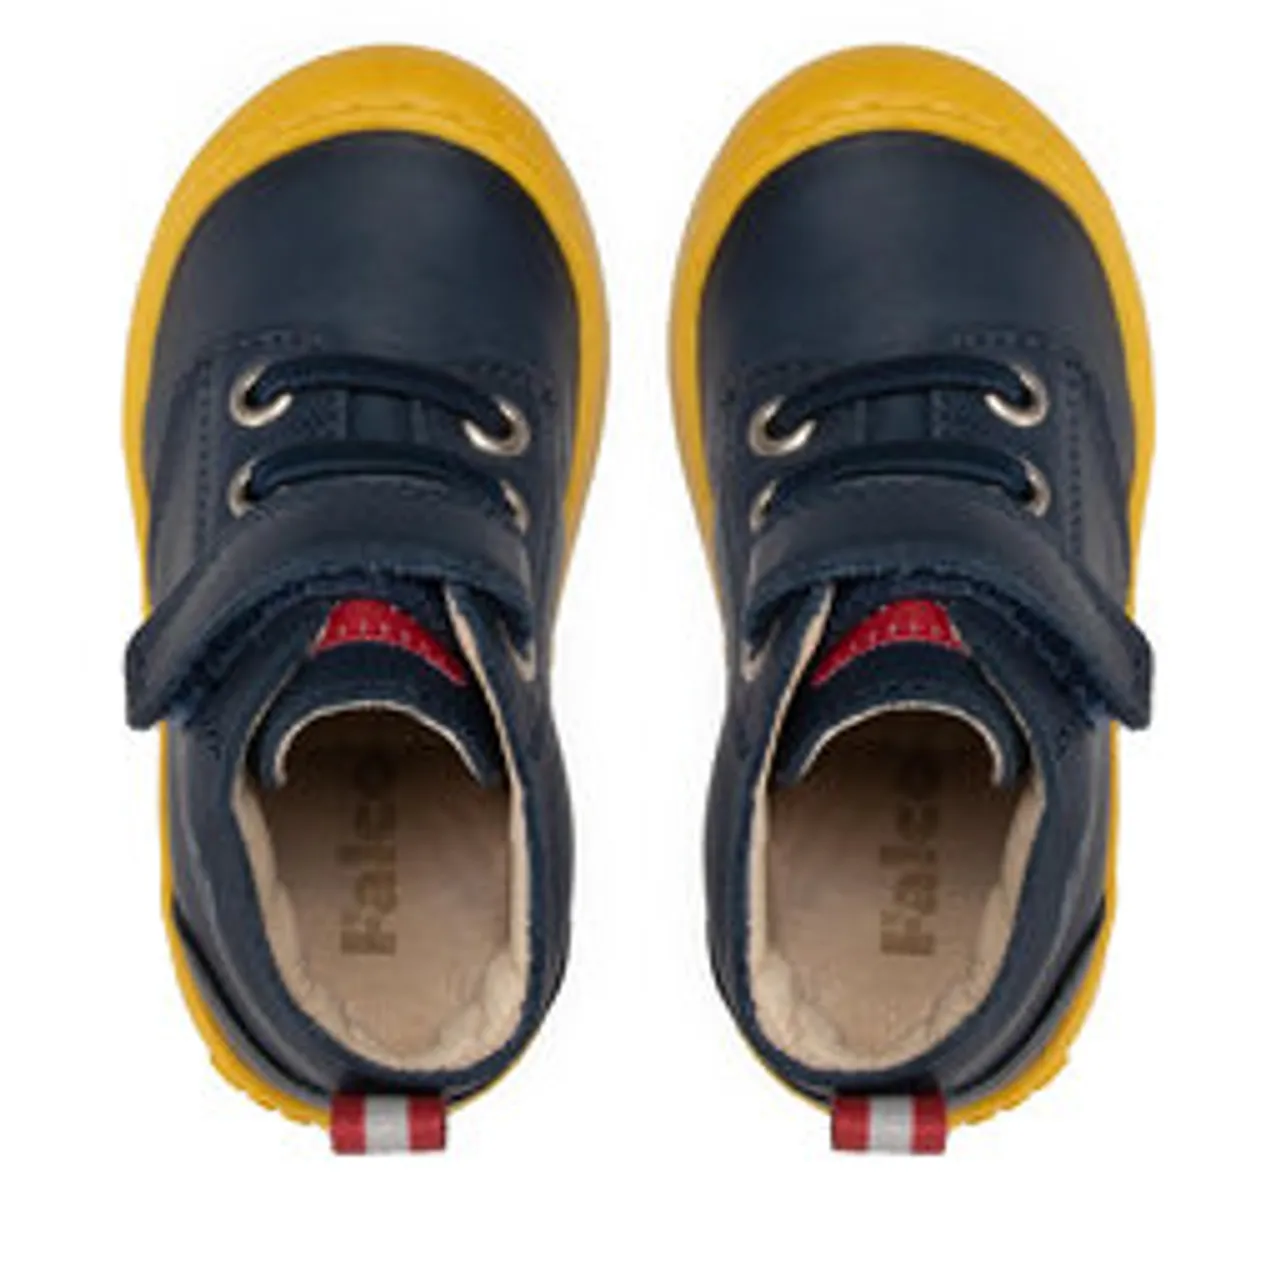 Sneakers Naturino Falcotto by Naturino Blumit Vl 0012017197.01.1C67 Navy Sole Yellow